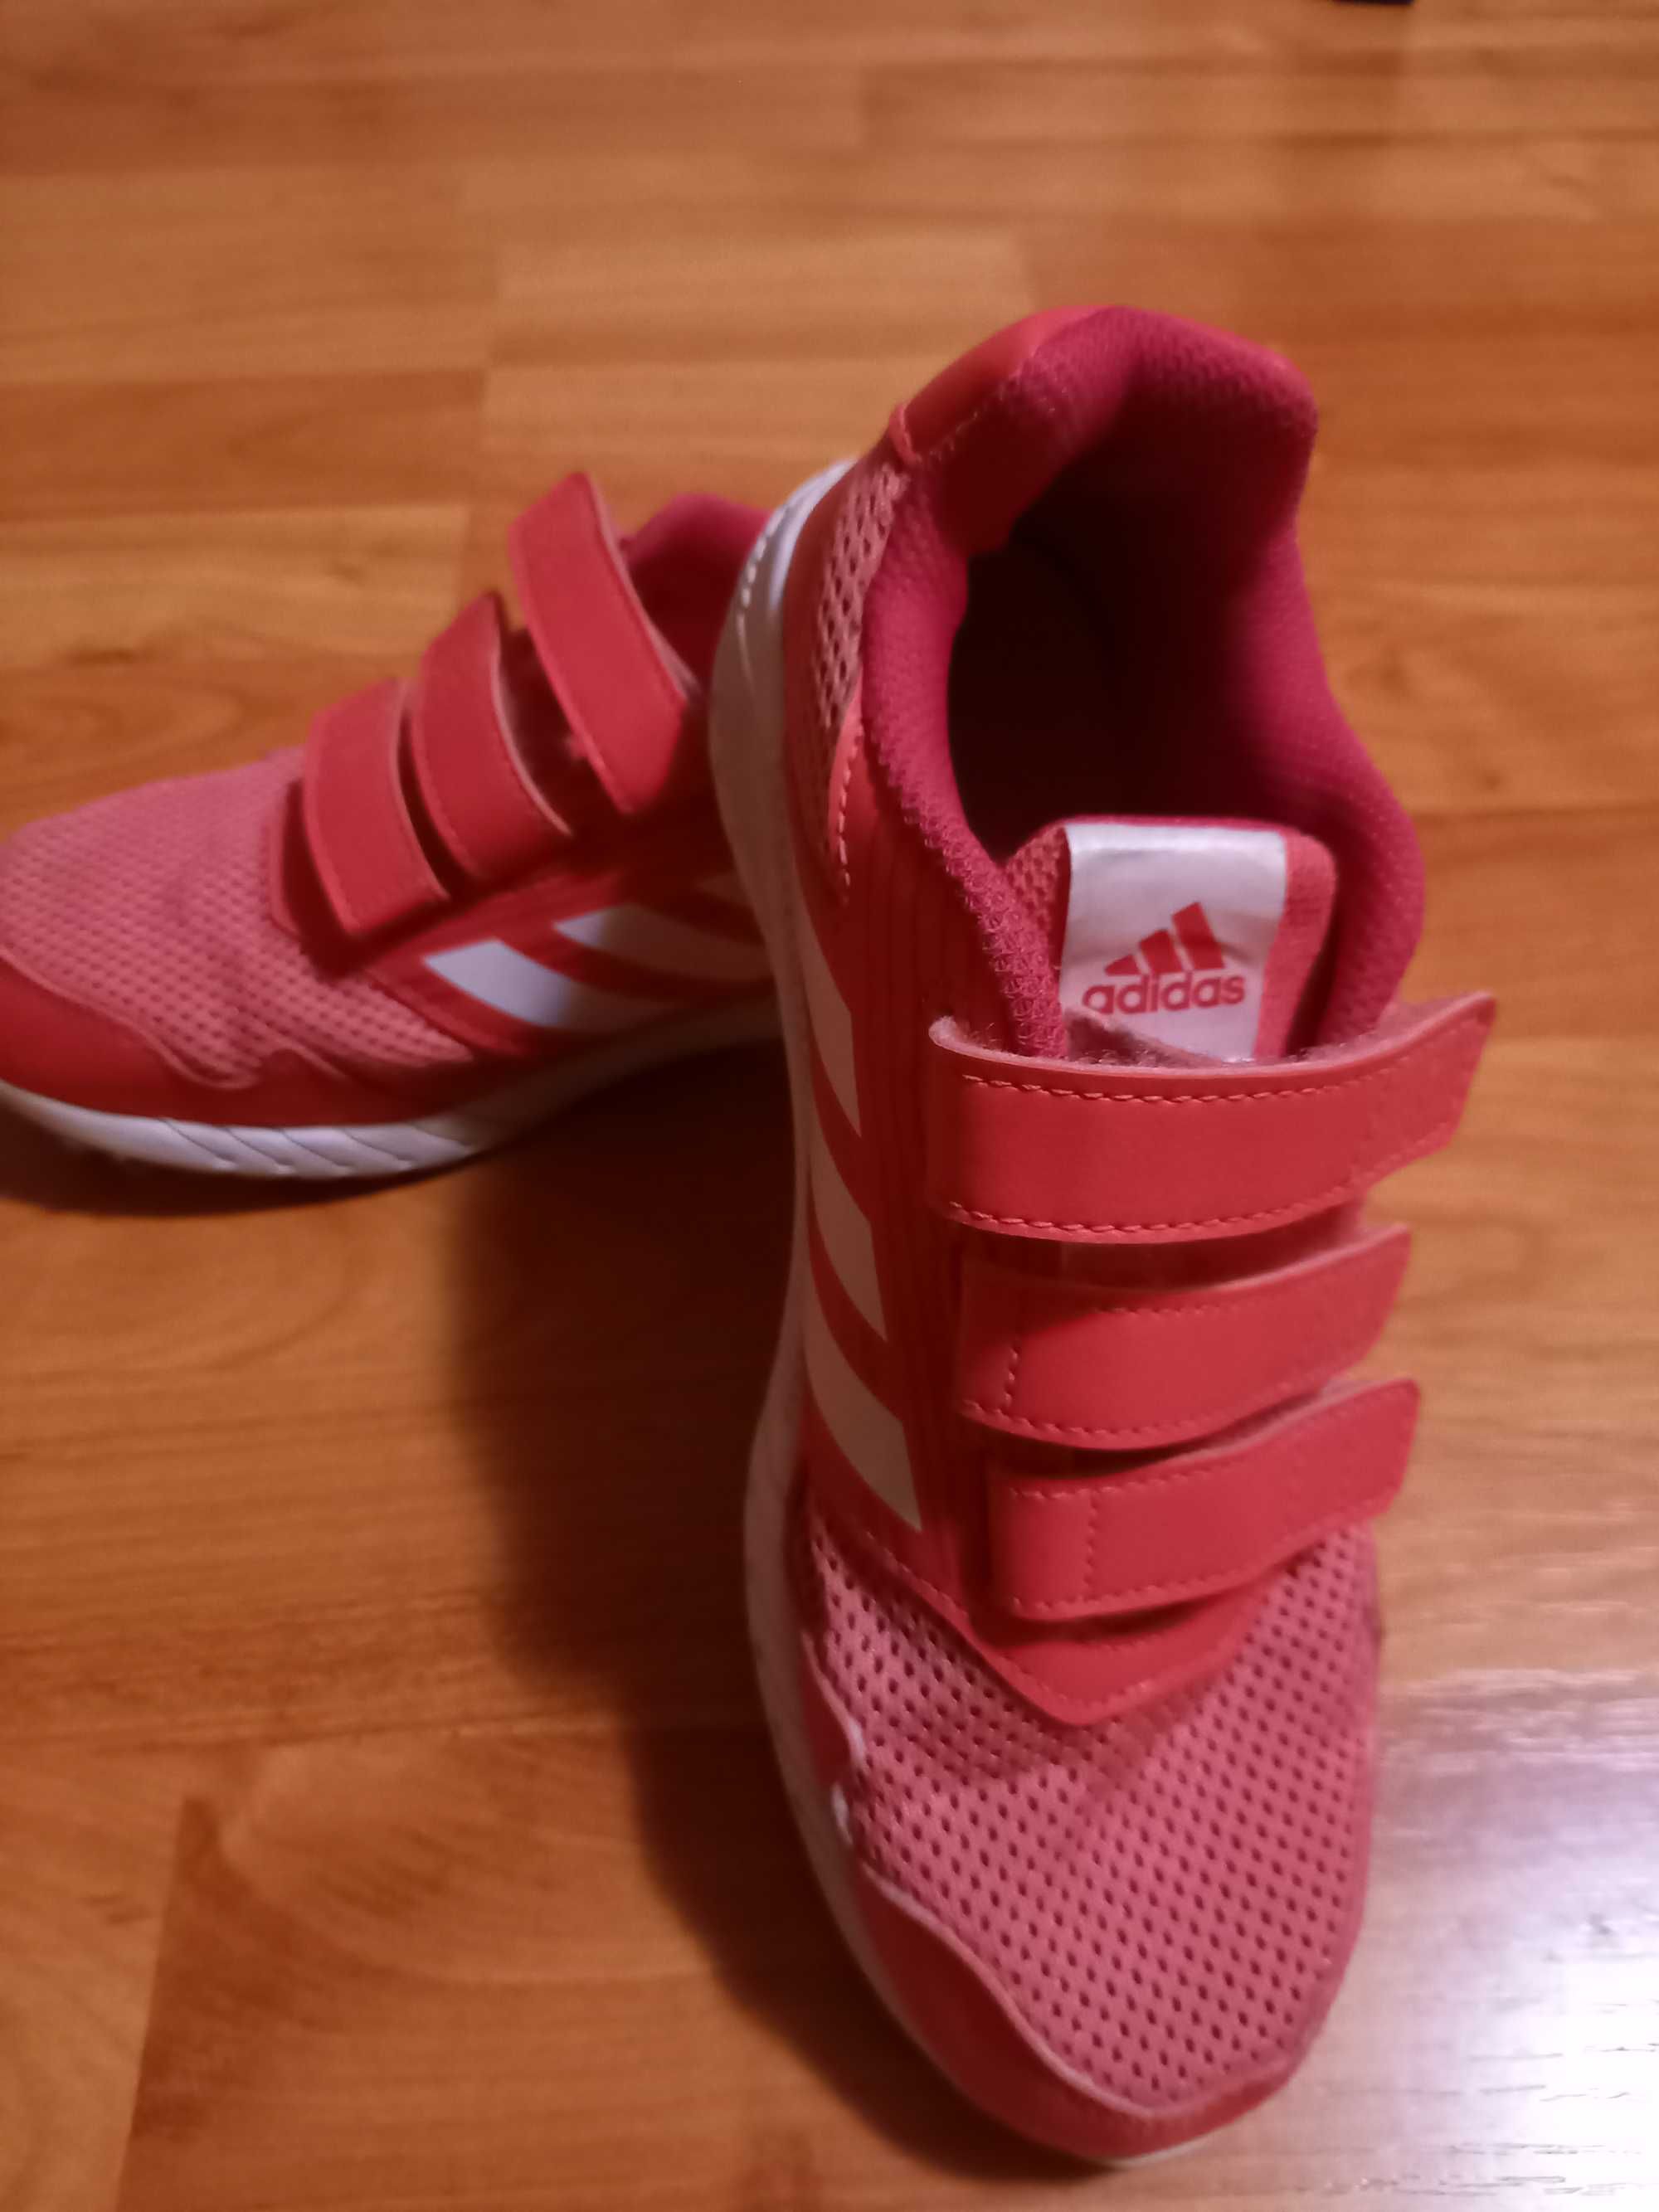 Pantofi Adidas copii nr. 35 roz, putin folositi la plimbare.